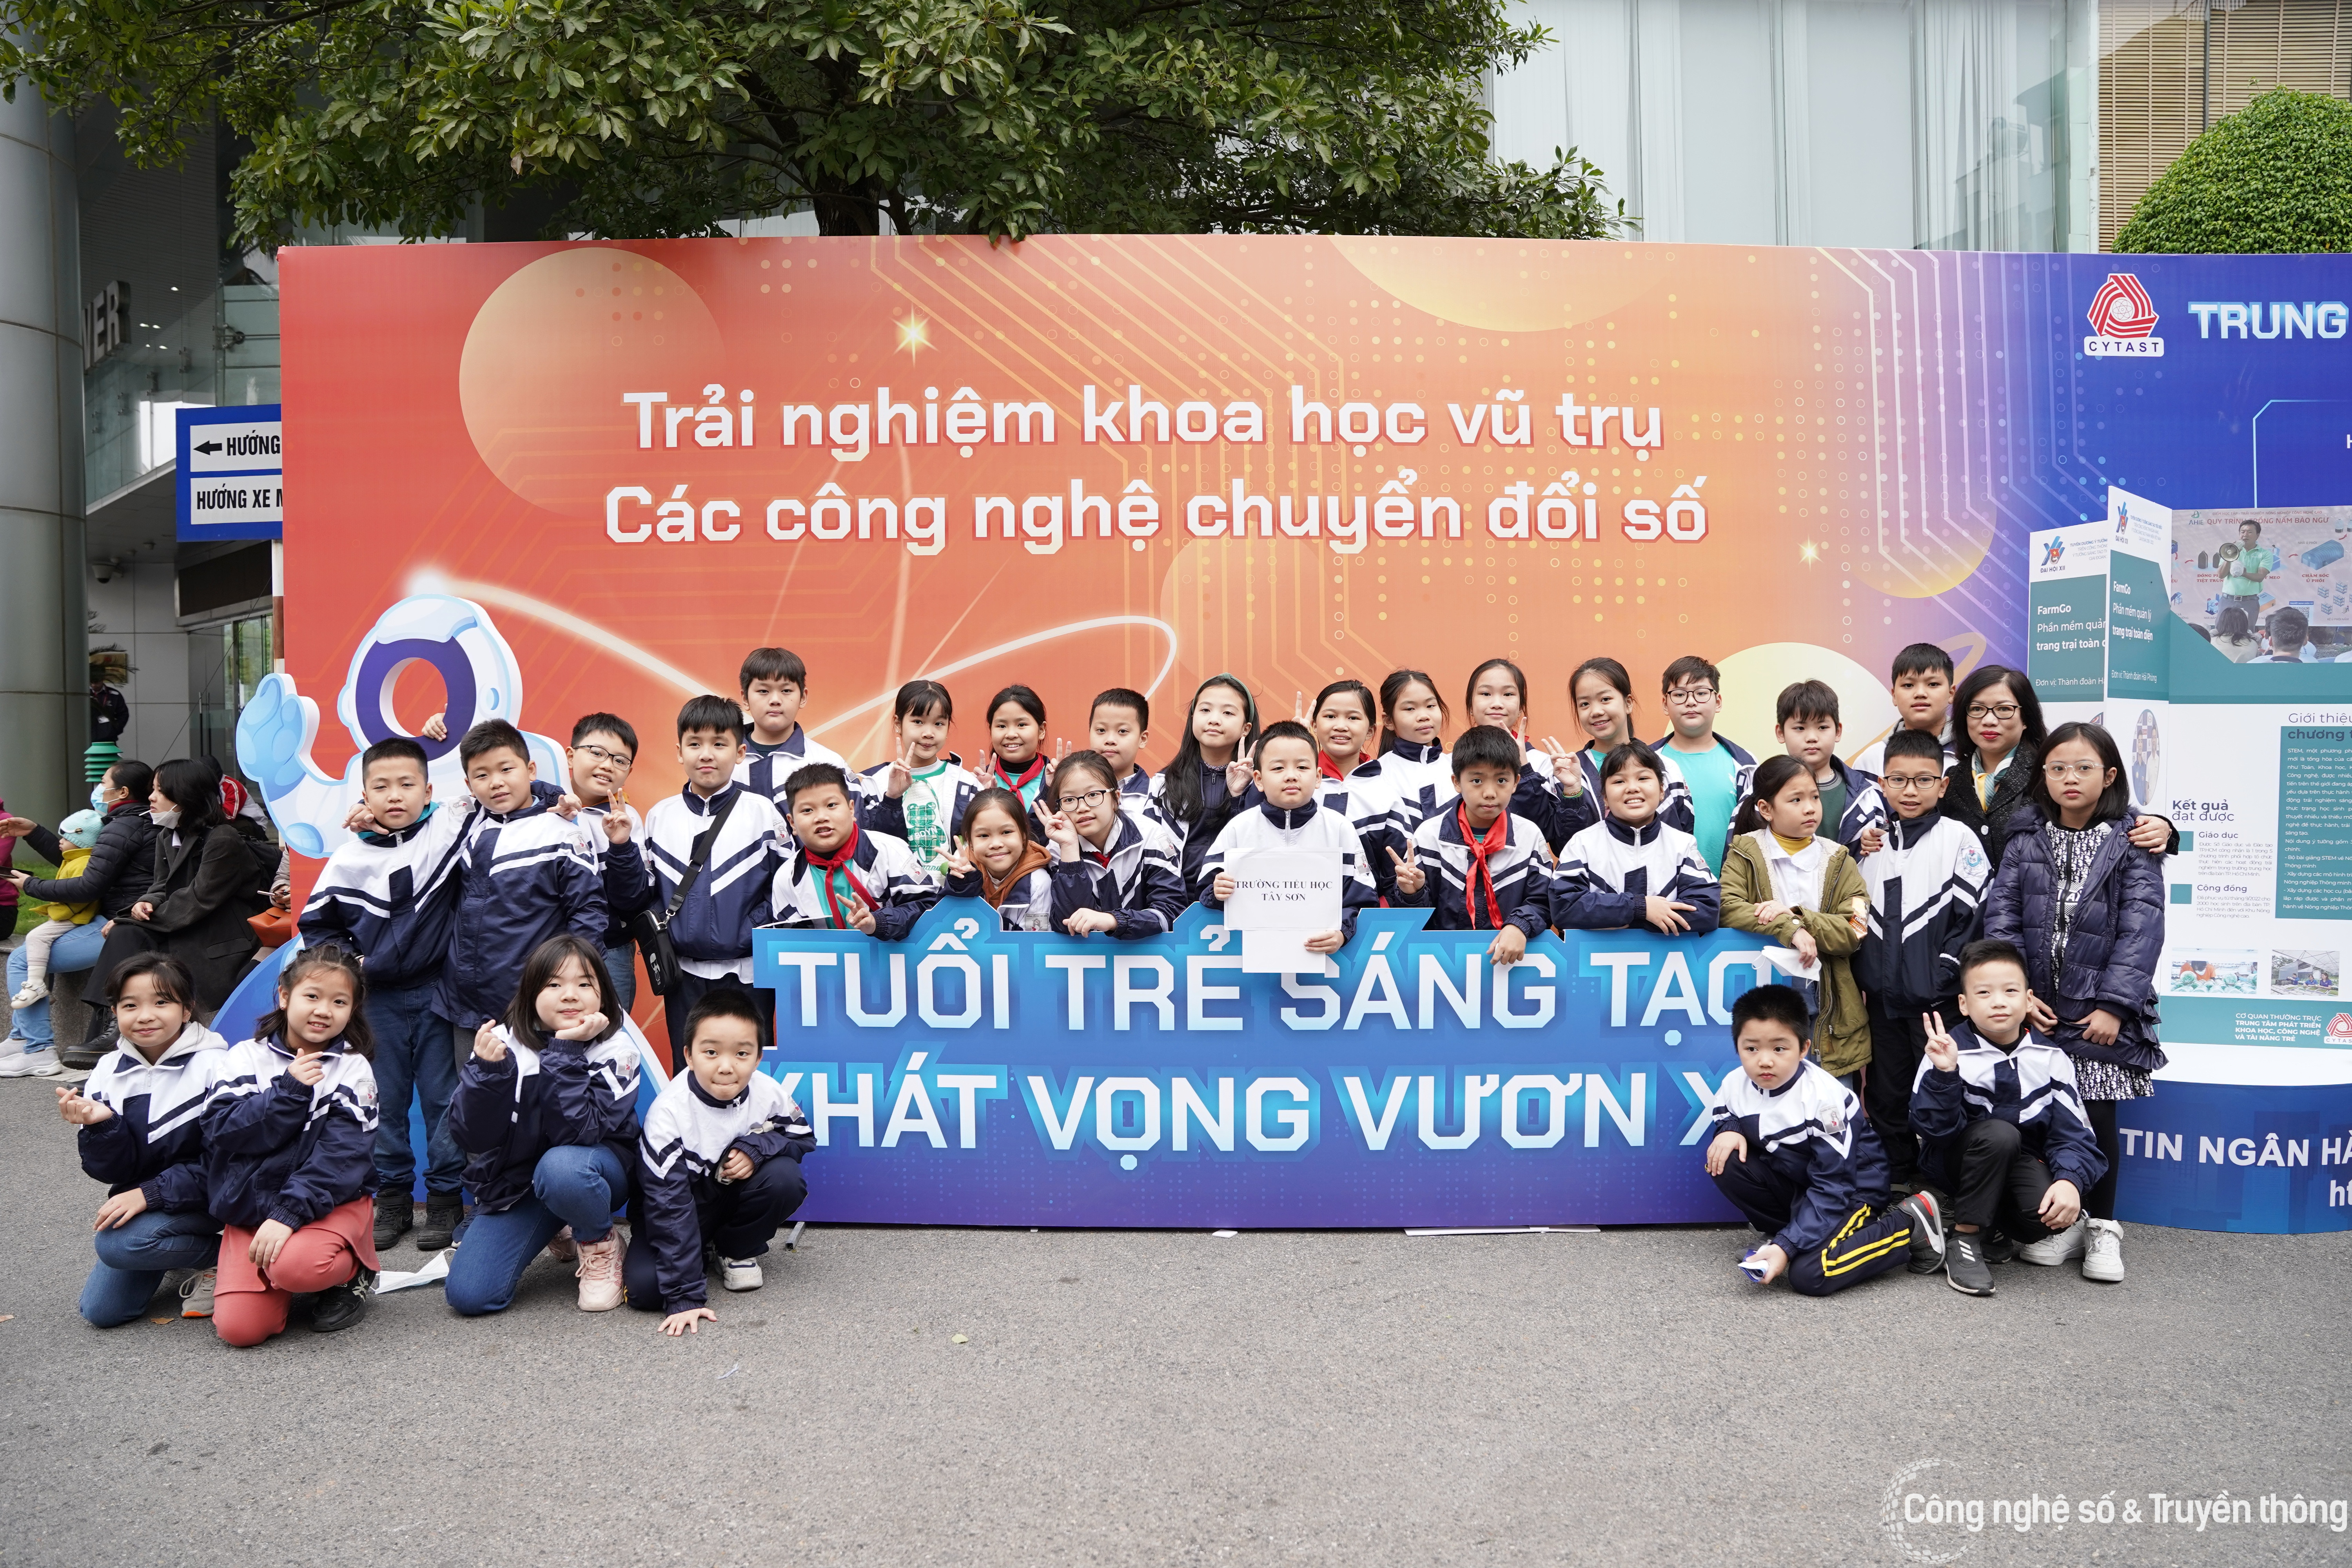 Trình diễn sản phẩm, ý tưởng khoa học công nghệ của tuổi trẻ Việt Nam